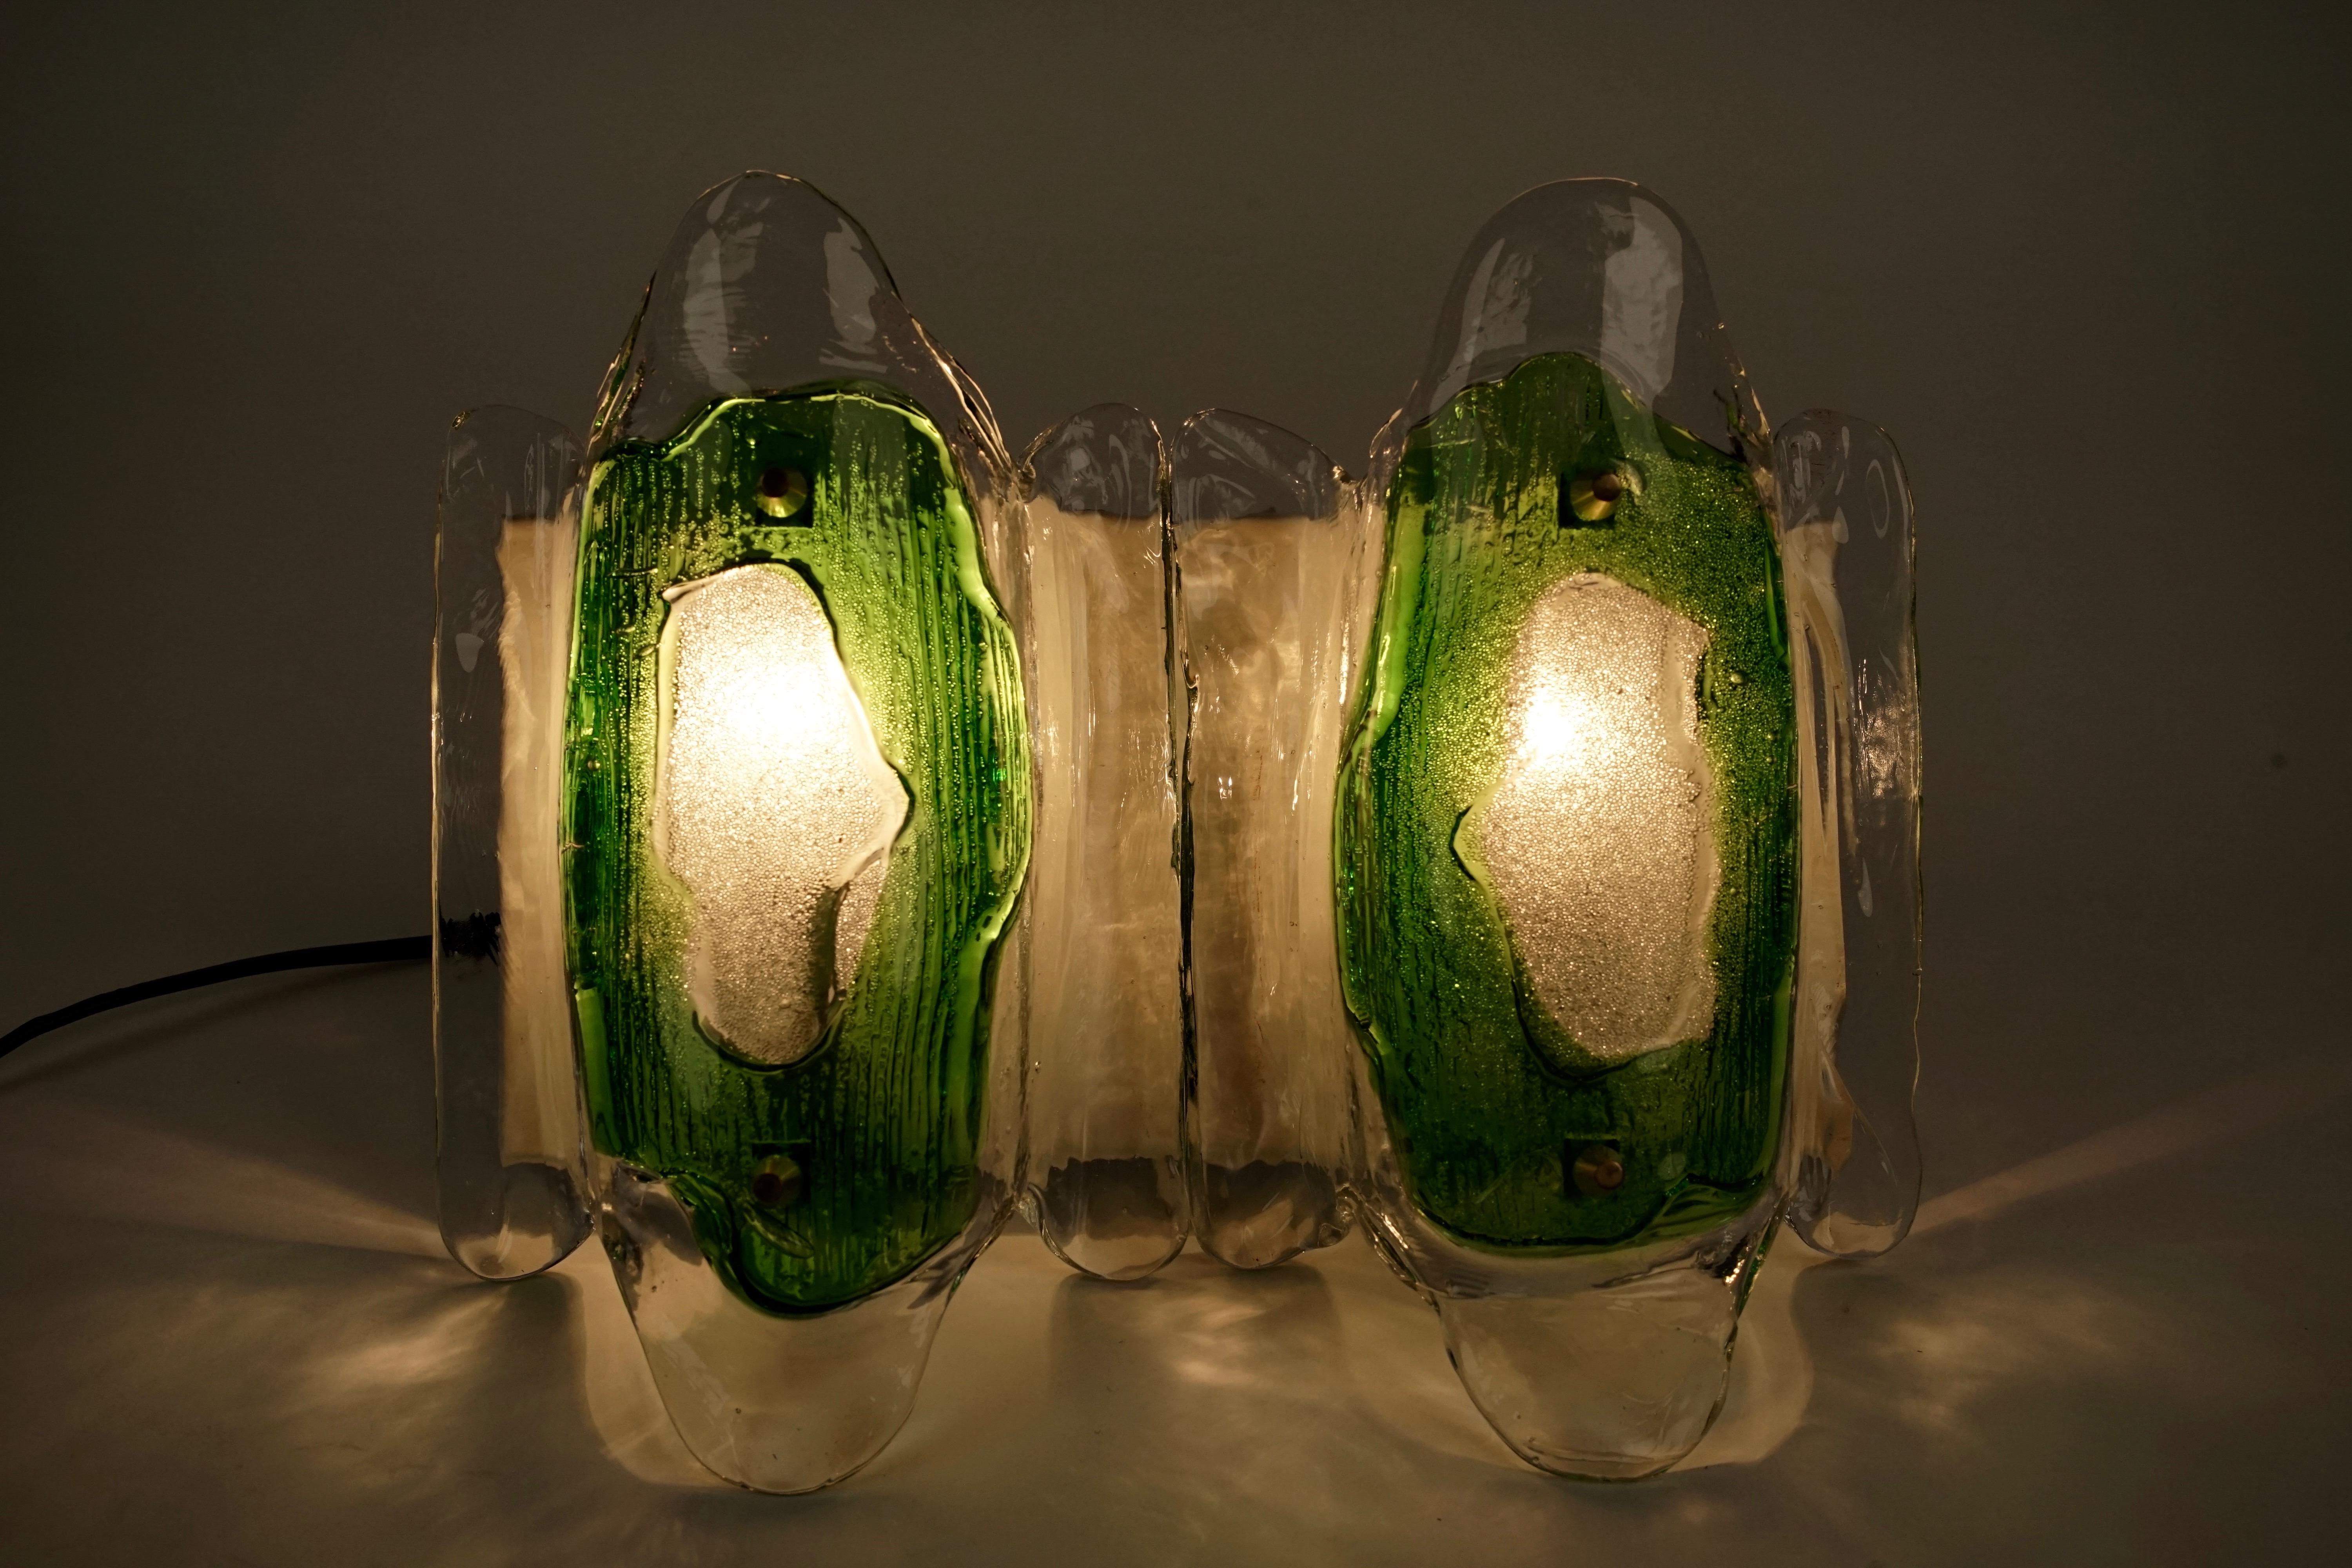 moderne Wandleuchten aus österreichischem Glas, hergestellt Ende der 1960er, Anfang der 1970er Jahre. Das Glas wurde im Ofen individuell geformt, um einzigartige zweifarbige grüne und klare Glaselemente zu schaffen. Das Glas wurde von Stölze,